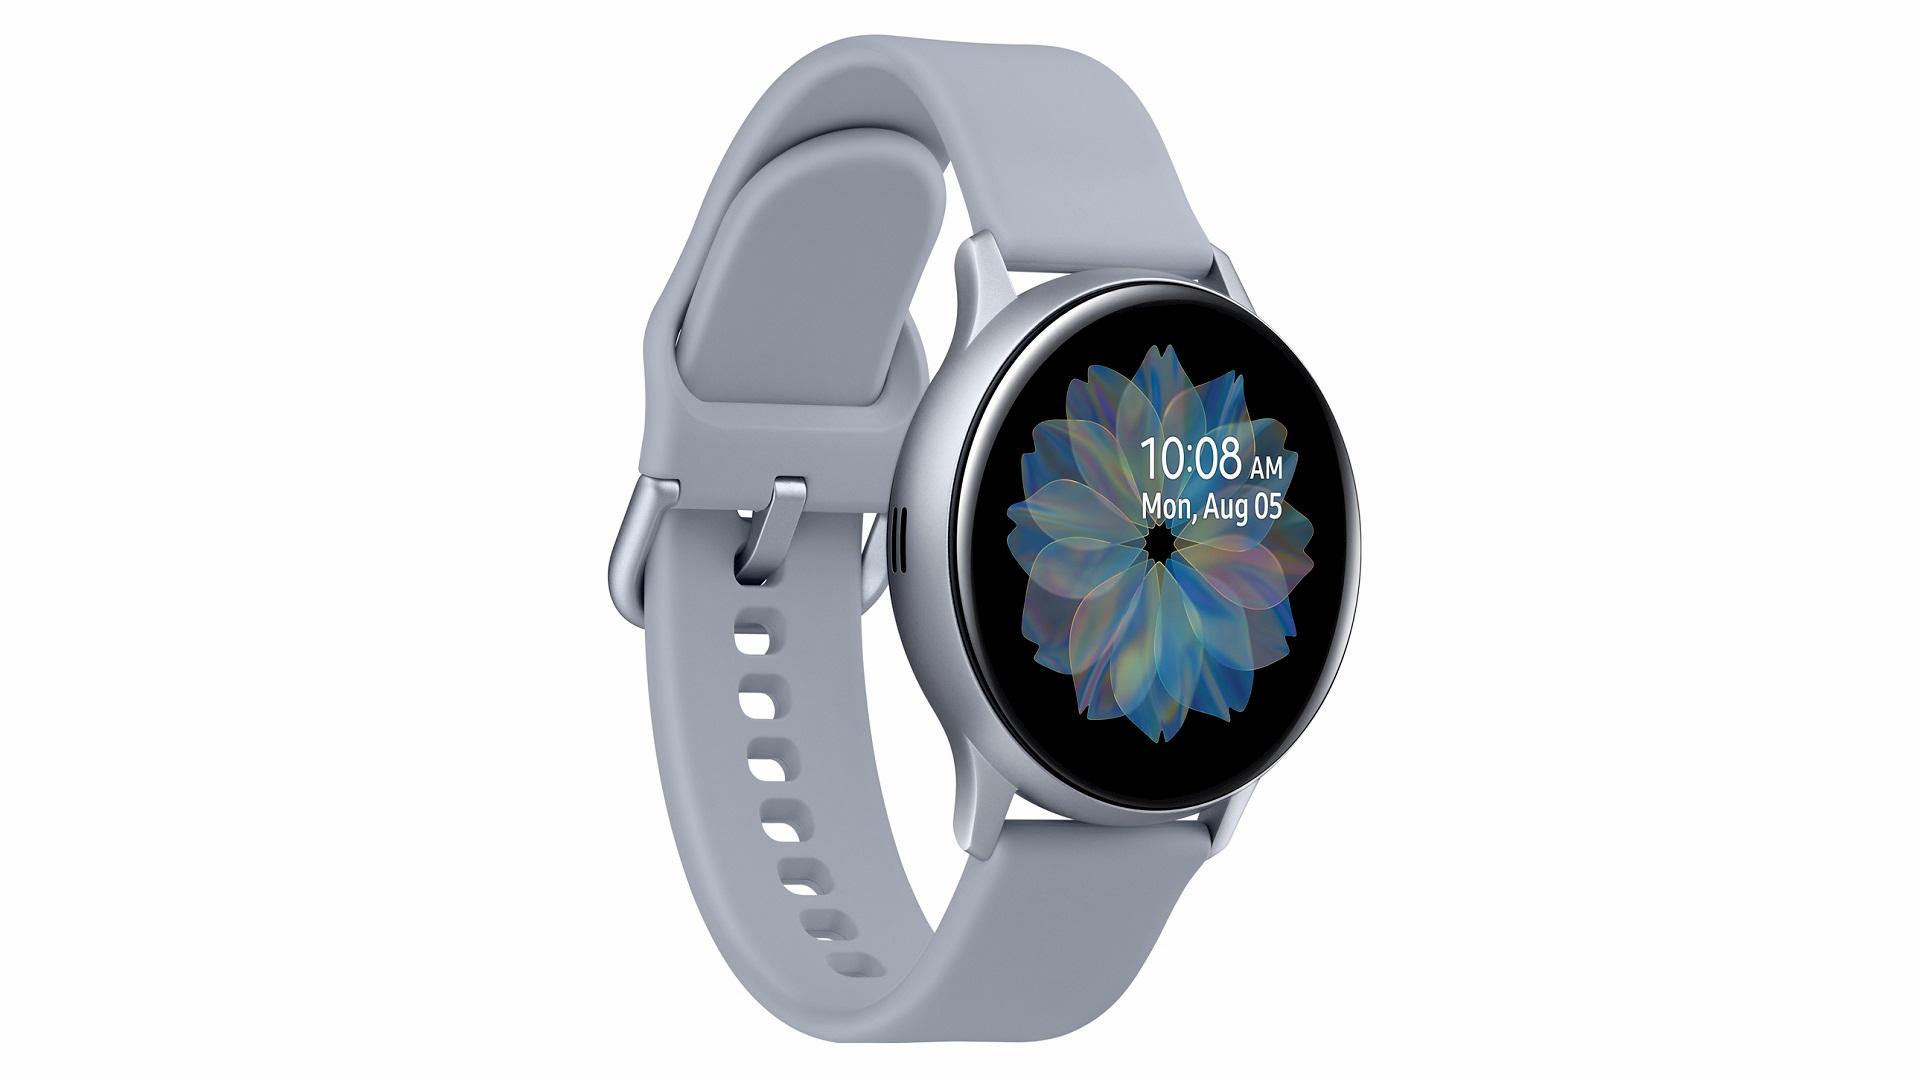 Samsung Galaxy Watch 3-releasedatum gelekt